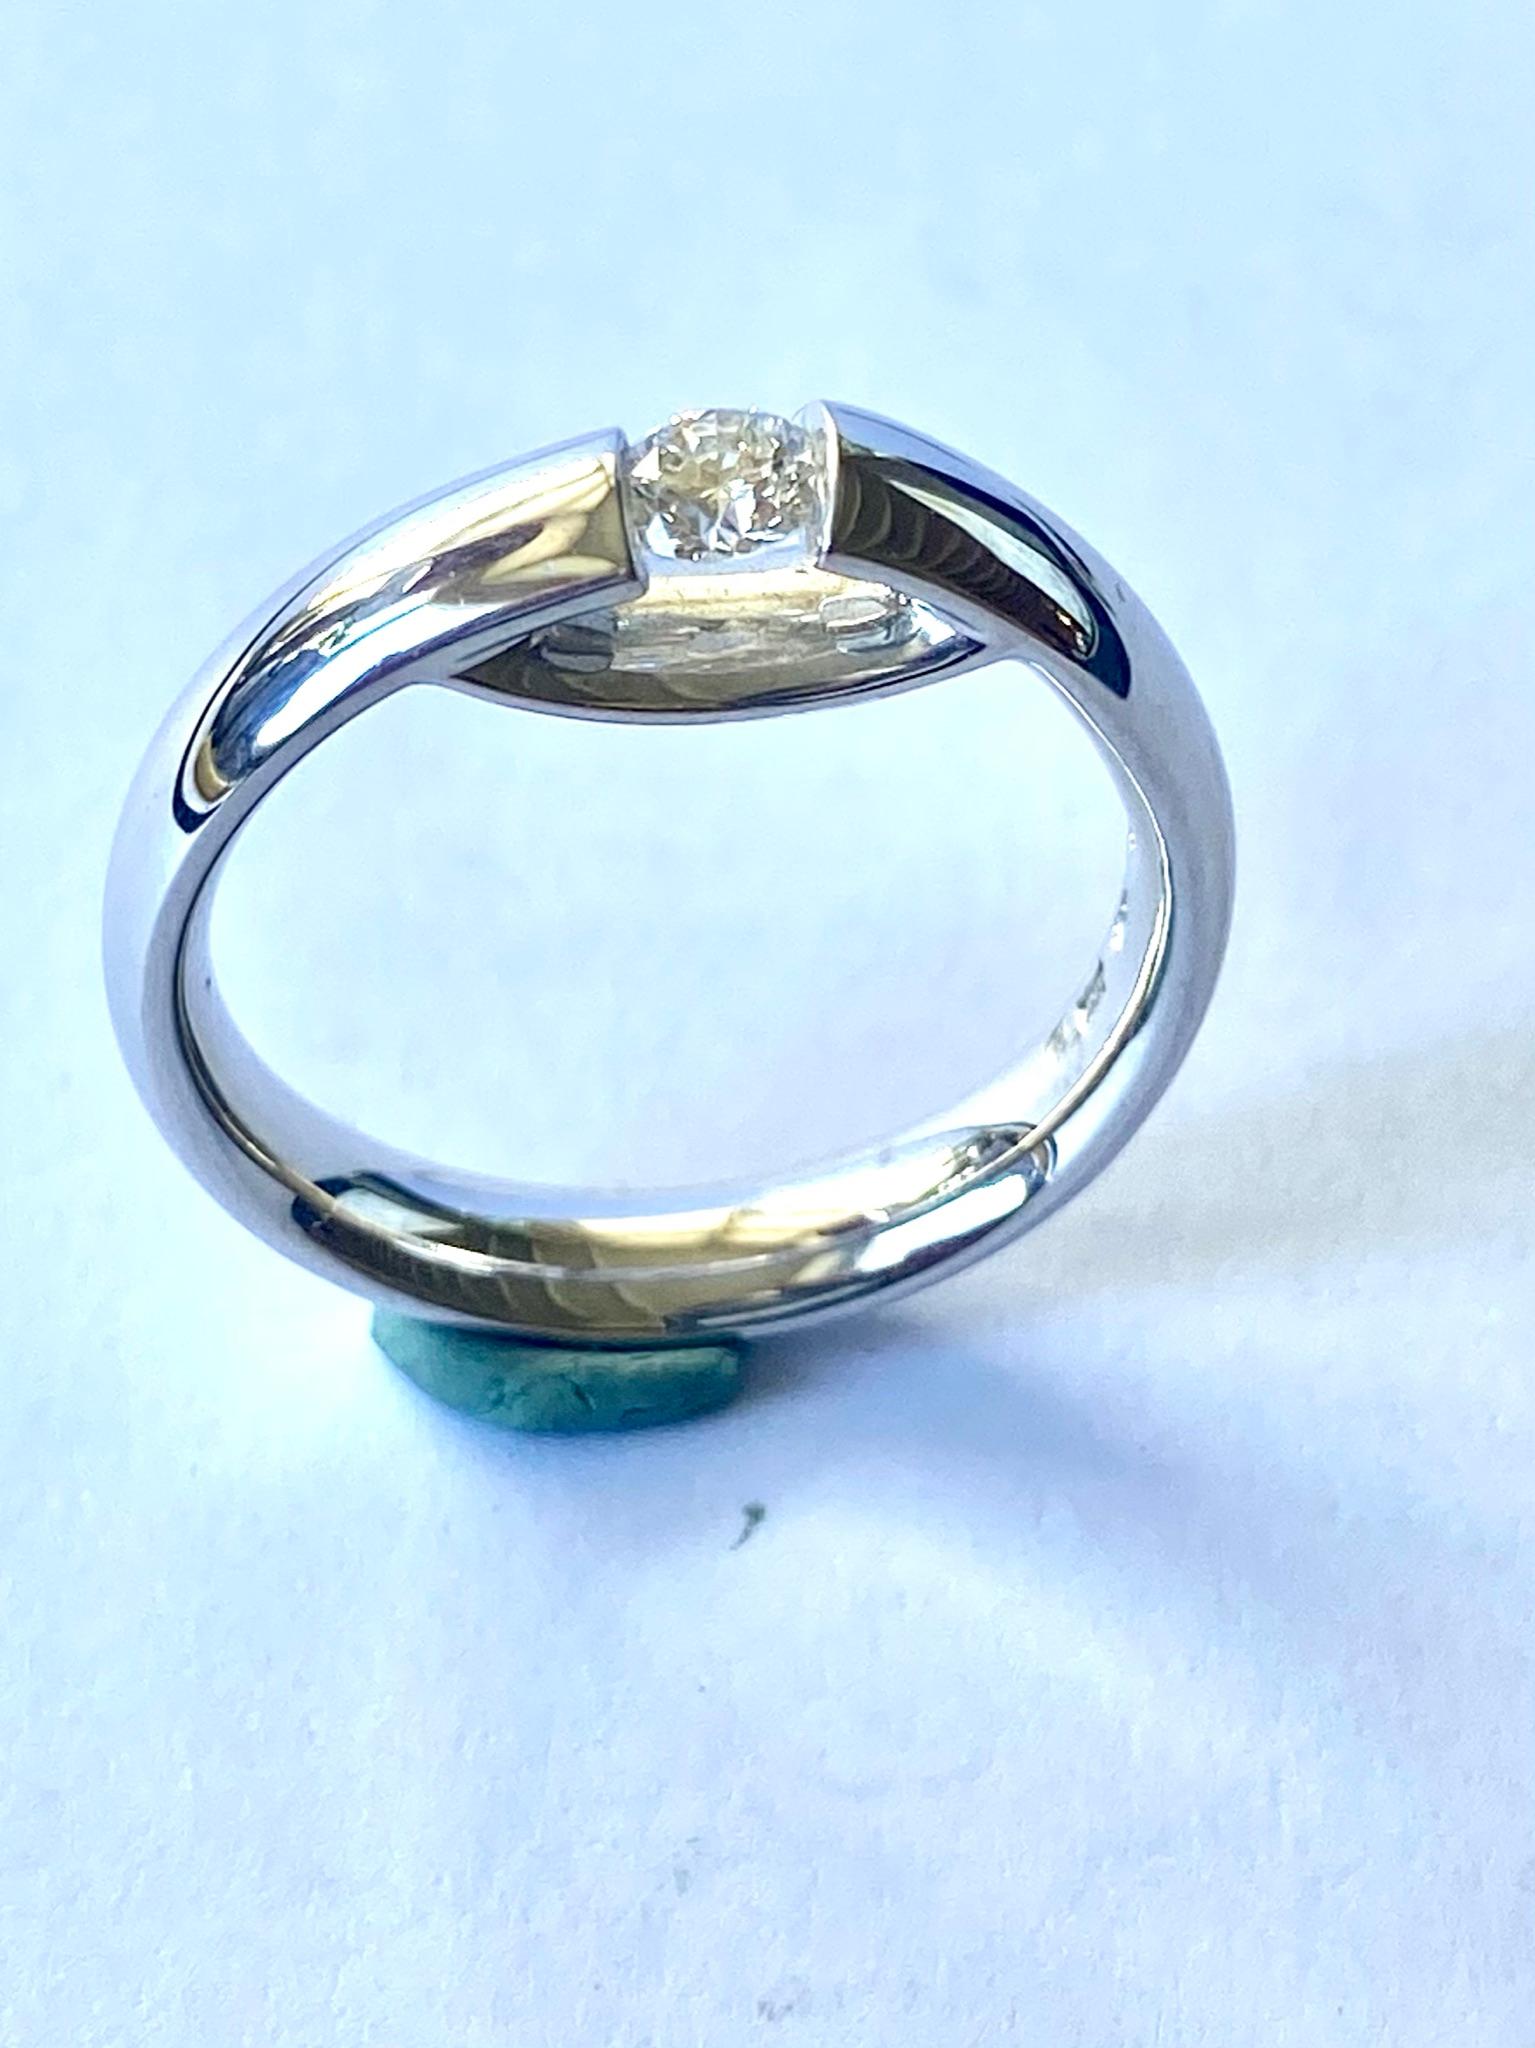 Centenary Georg Jensen - 4 For Sale on 1stDibs | georg jensen centenary ring,  centenary ring georg jensen, georg jensen engagement rings